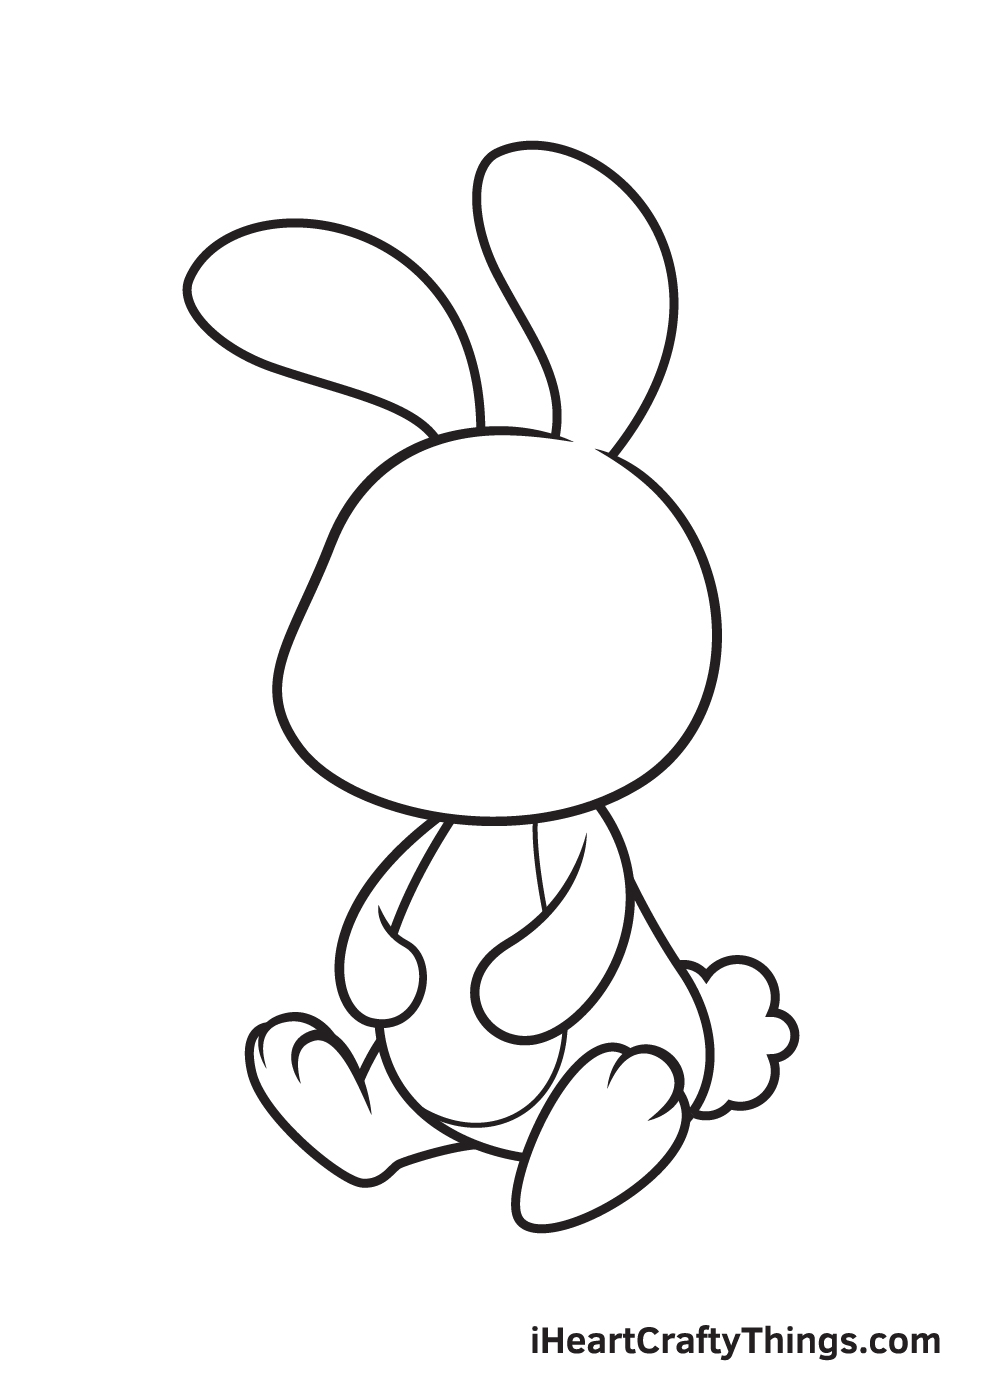 Vẽ chú thỏ - Bước 5